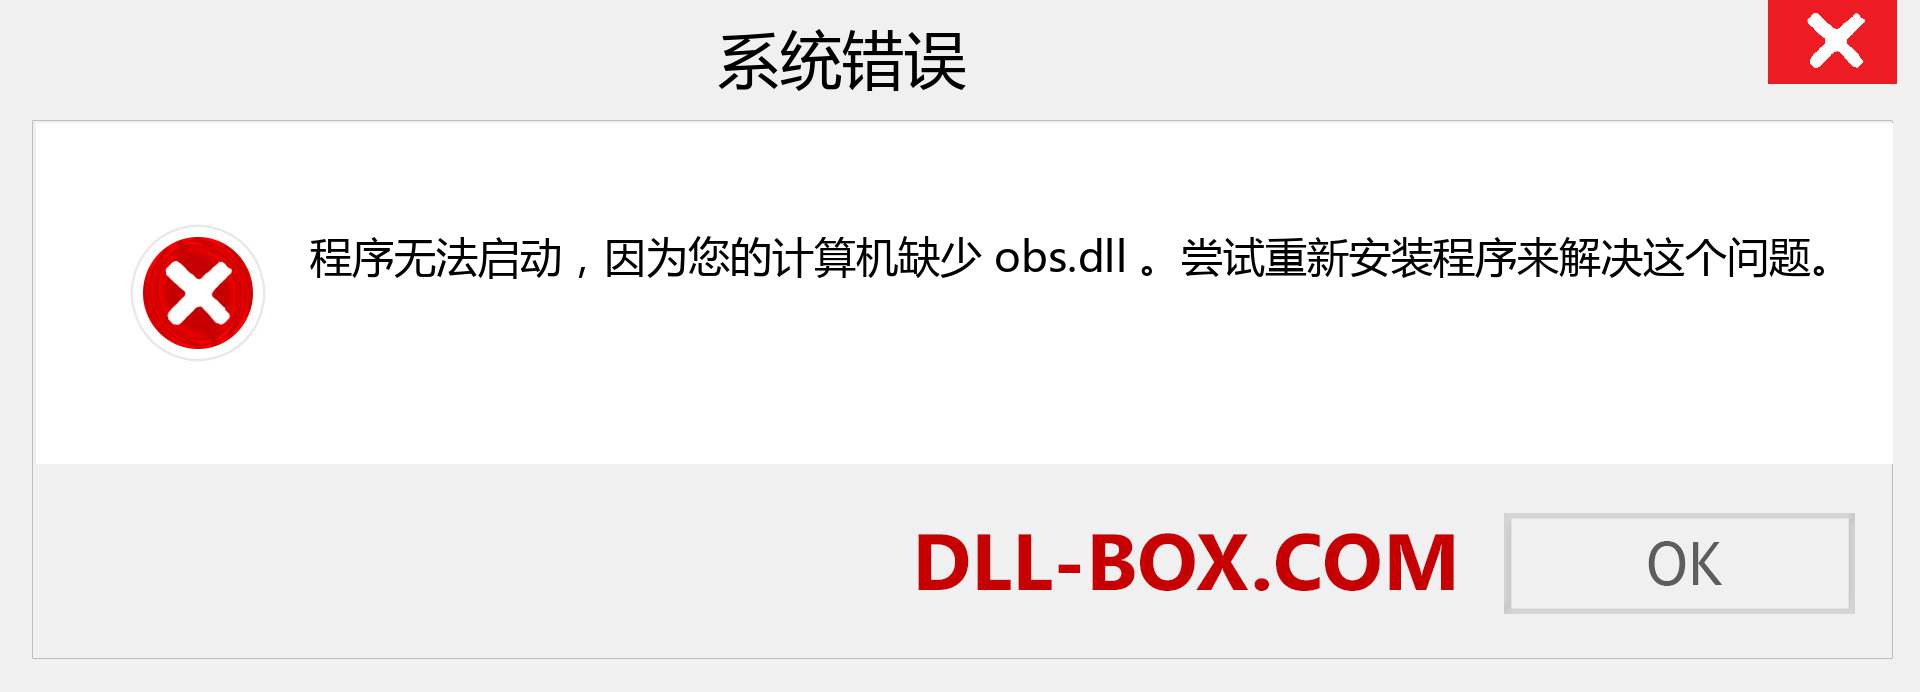 obs.dll 文件丢失？。 适用于 Windows 7、8、10 的下载 - 修复 Windows、照片、图像上的 obs dll 丢失错误